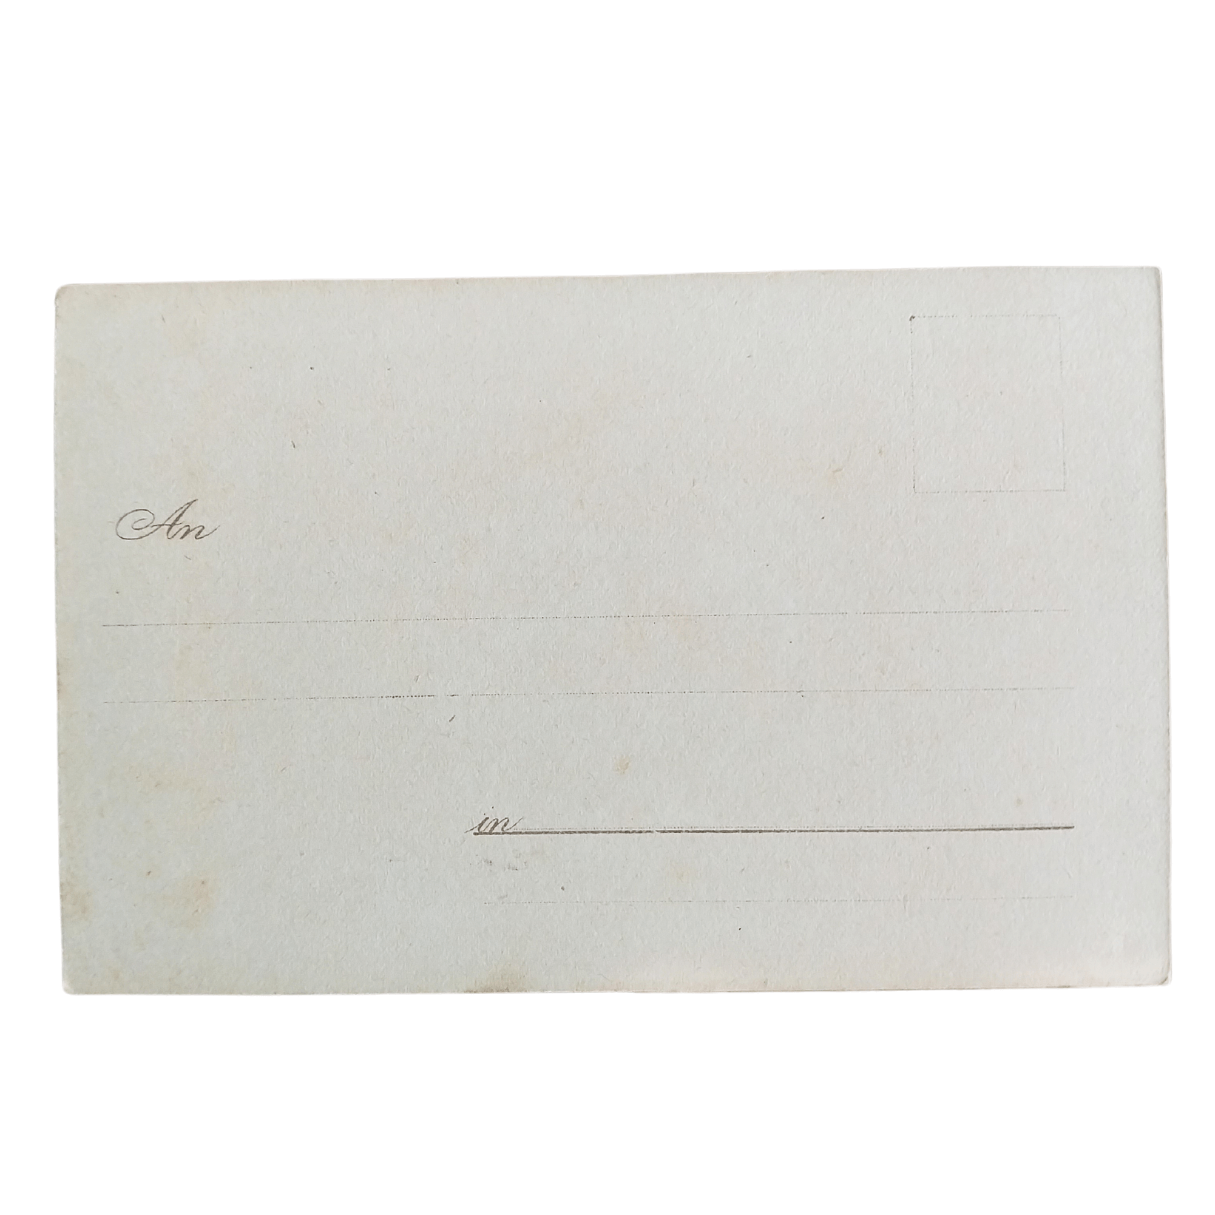 Cartão Postal Antigo Alemão de Ano Novo (Prosit Neujahr) - Velha e a grama